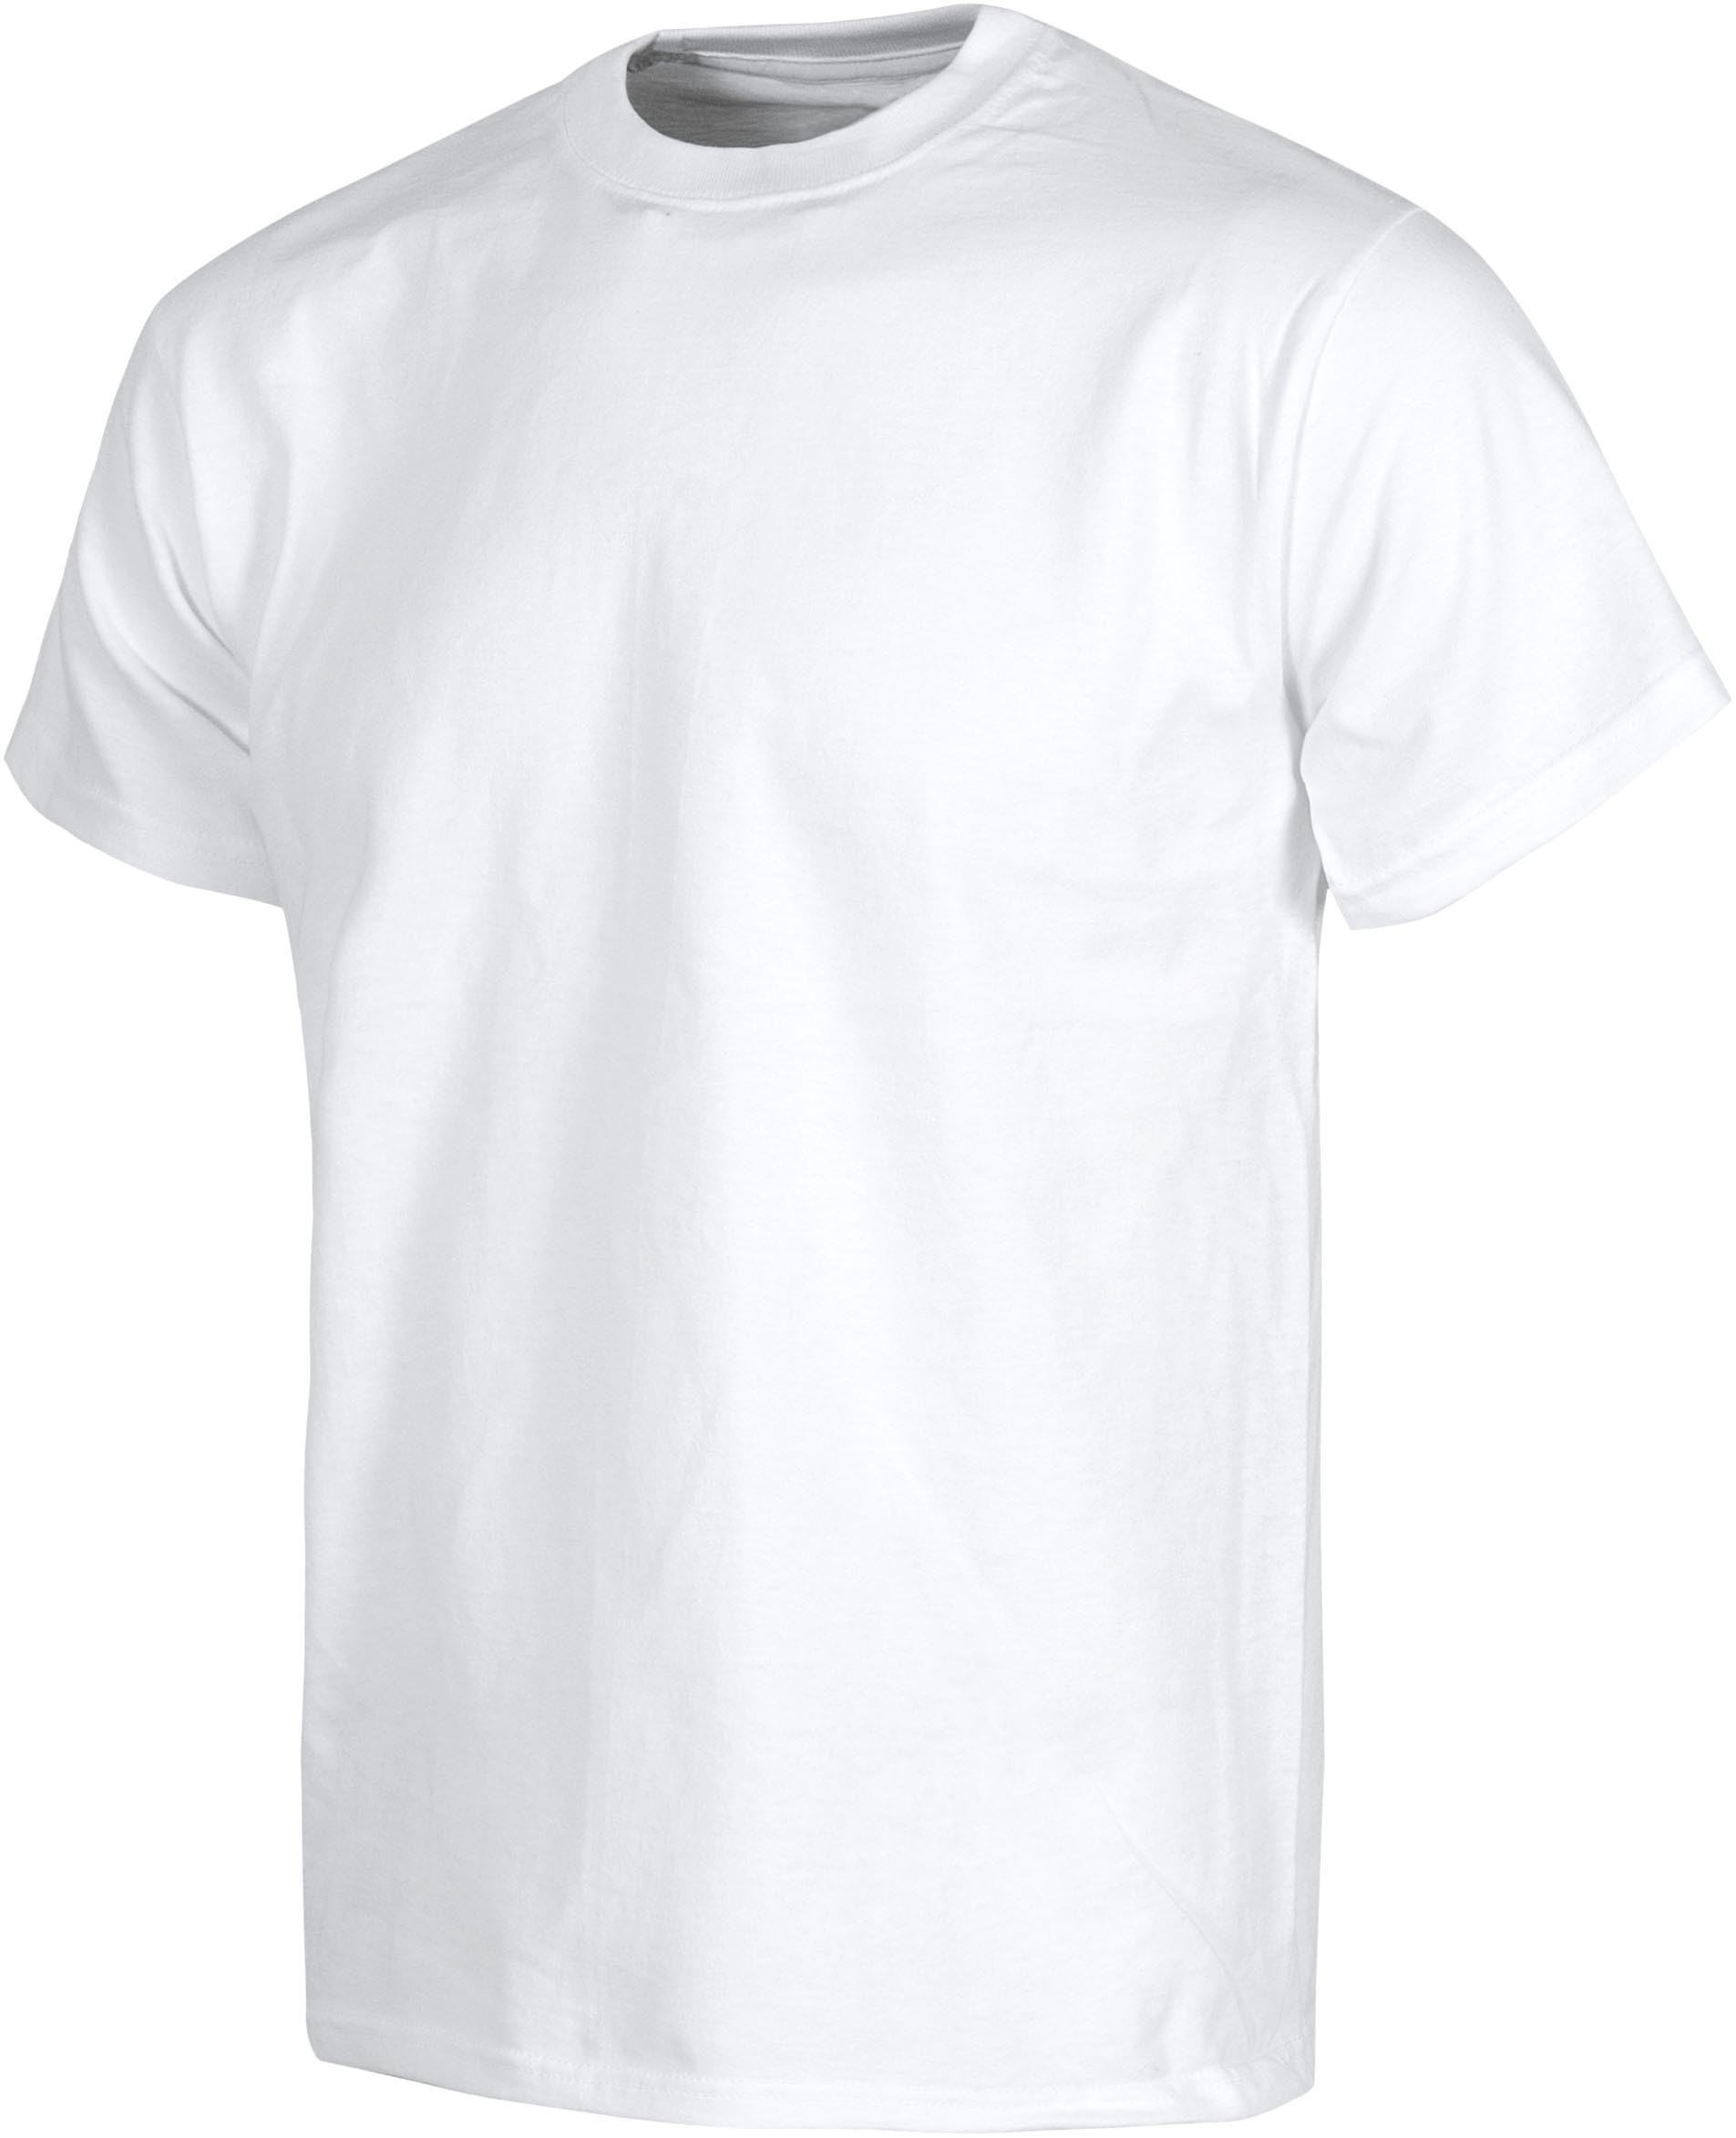 Camiseta manga corta, cuello caja, algodón.S6601 - Estilo laboral